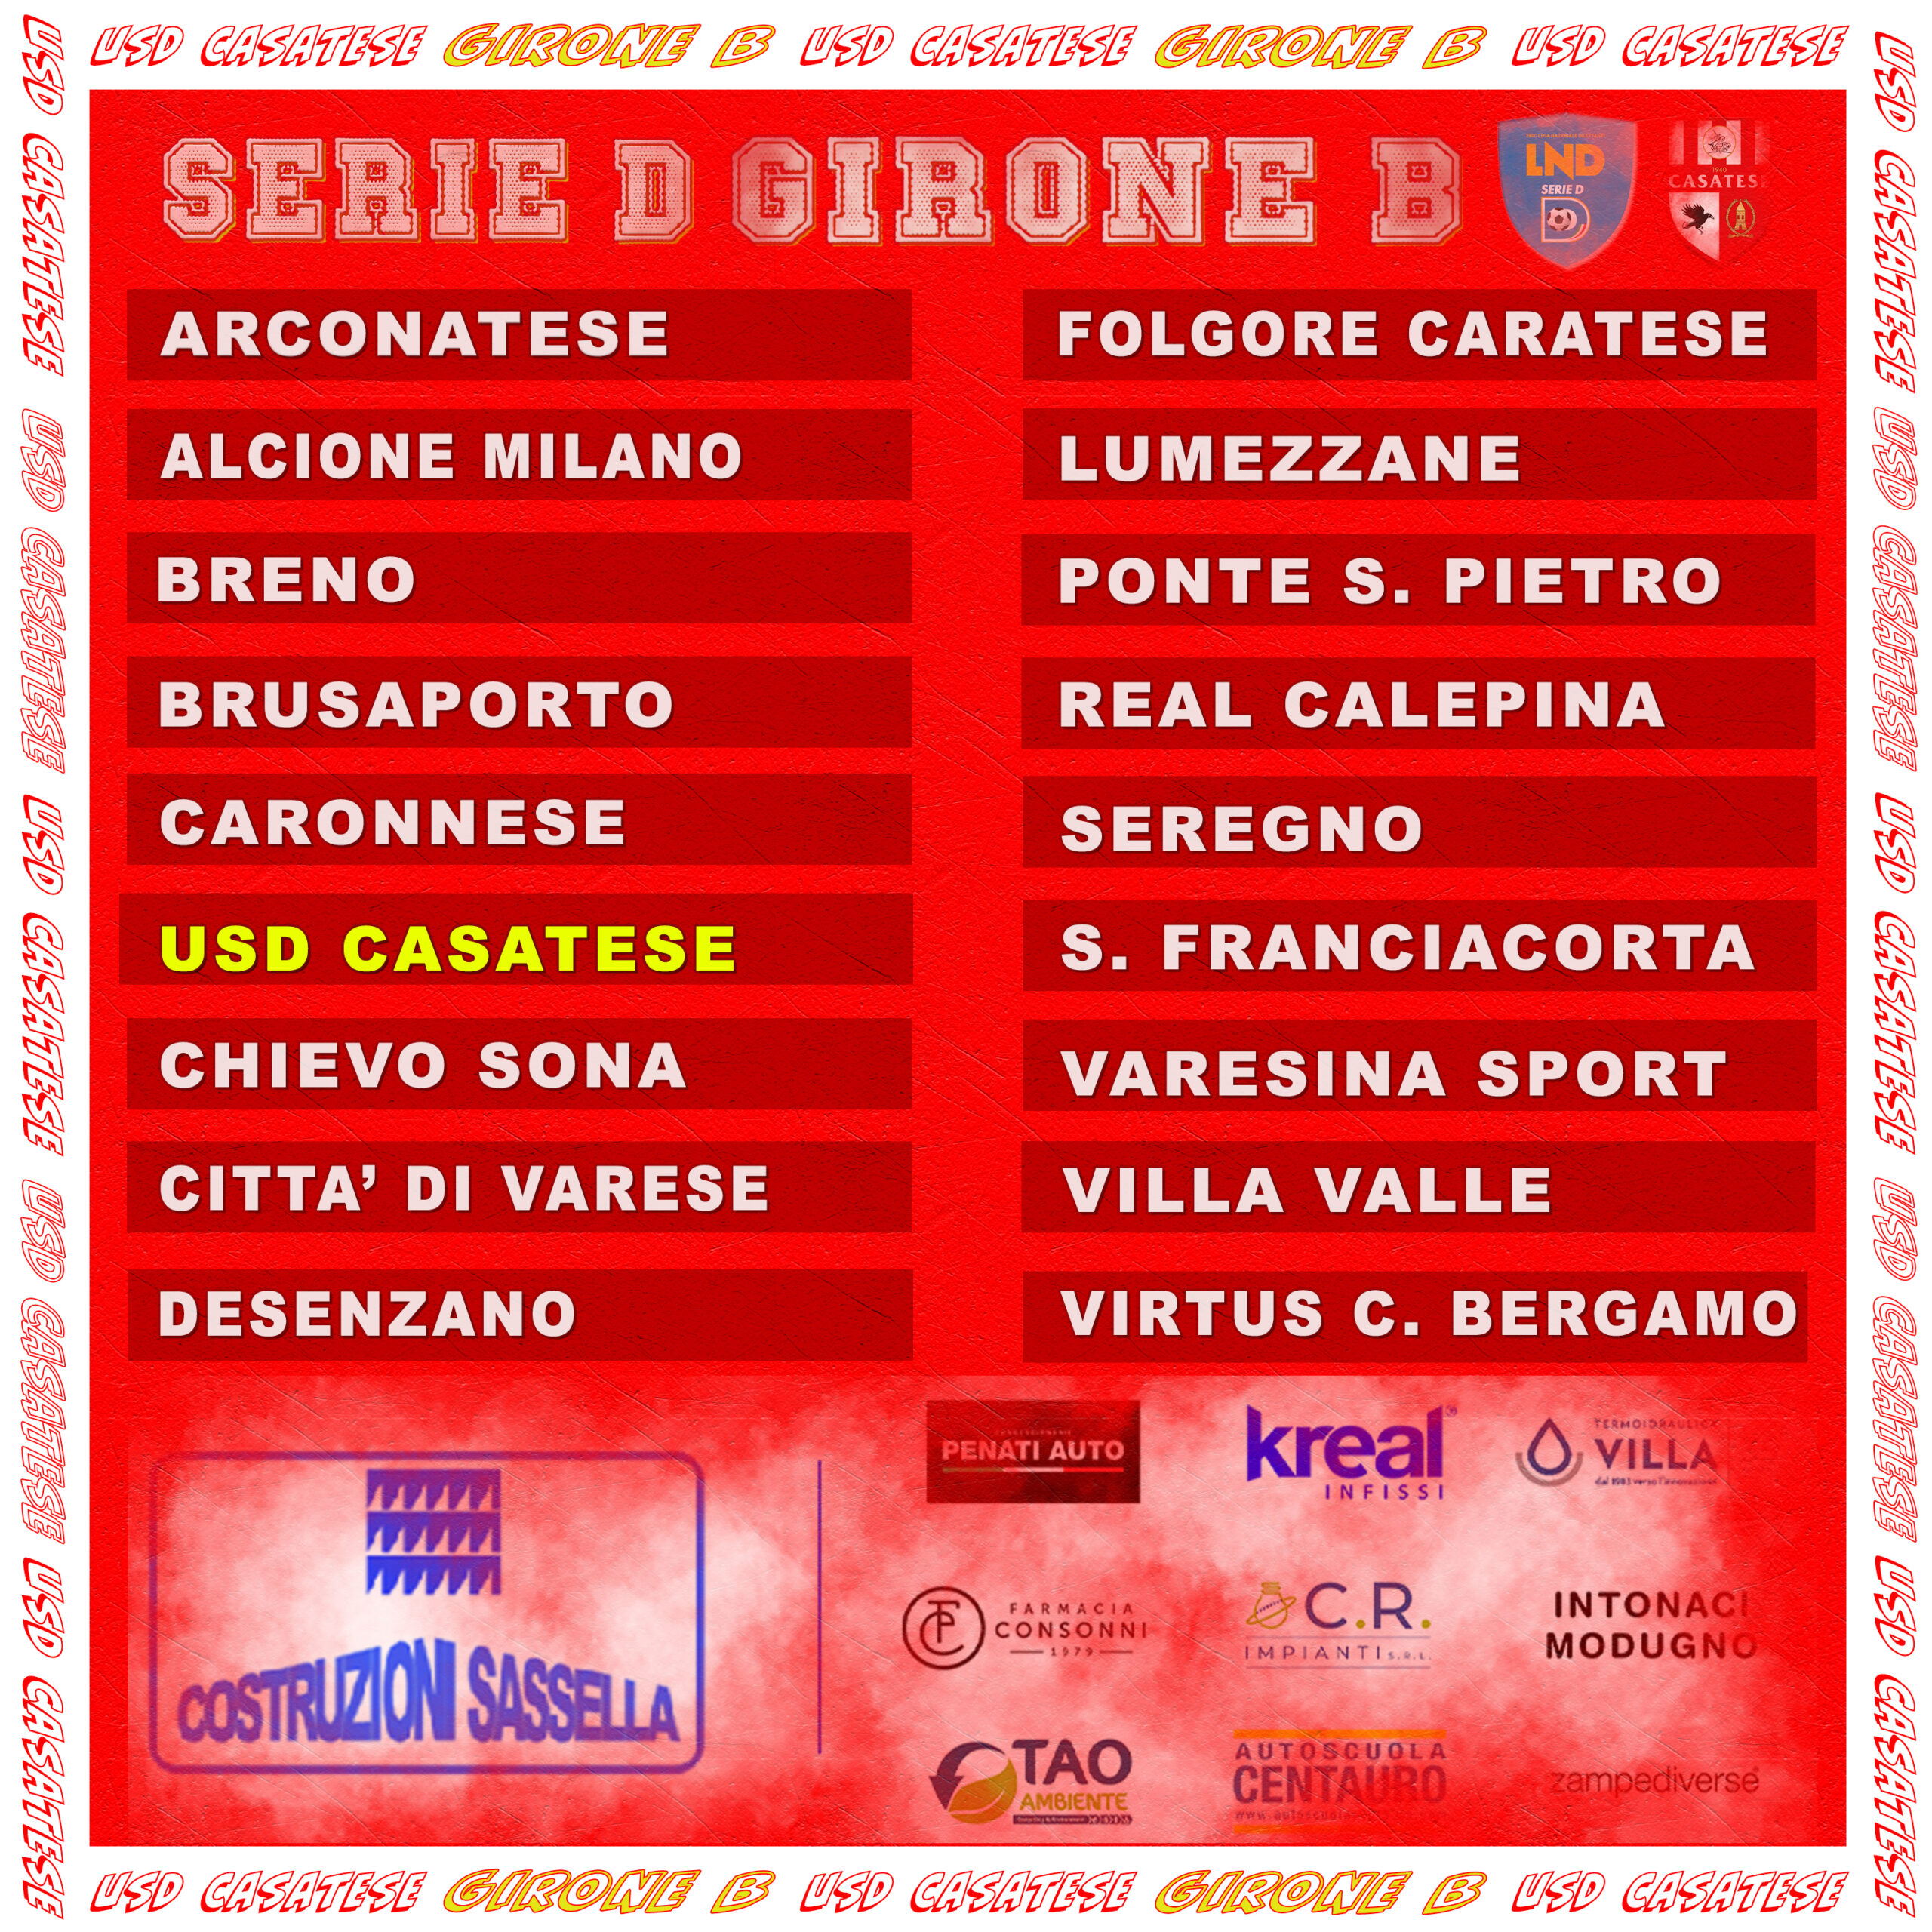 Girone B Serie D